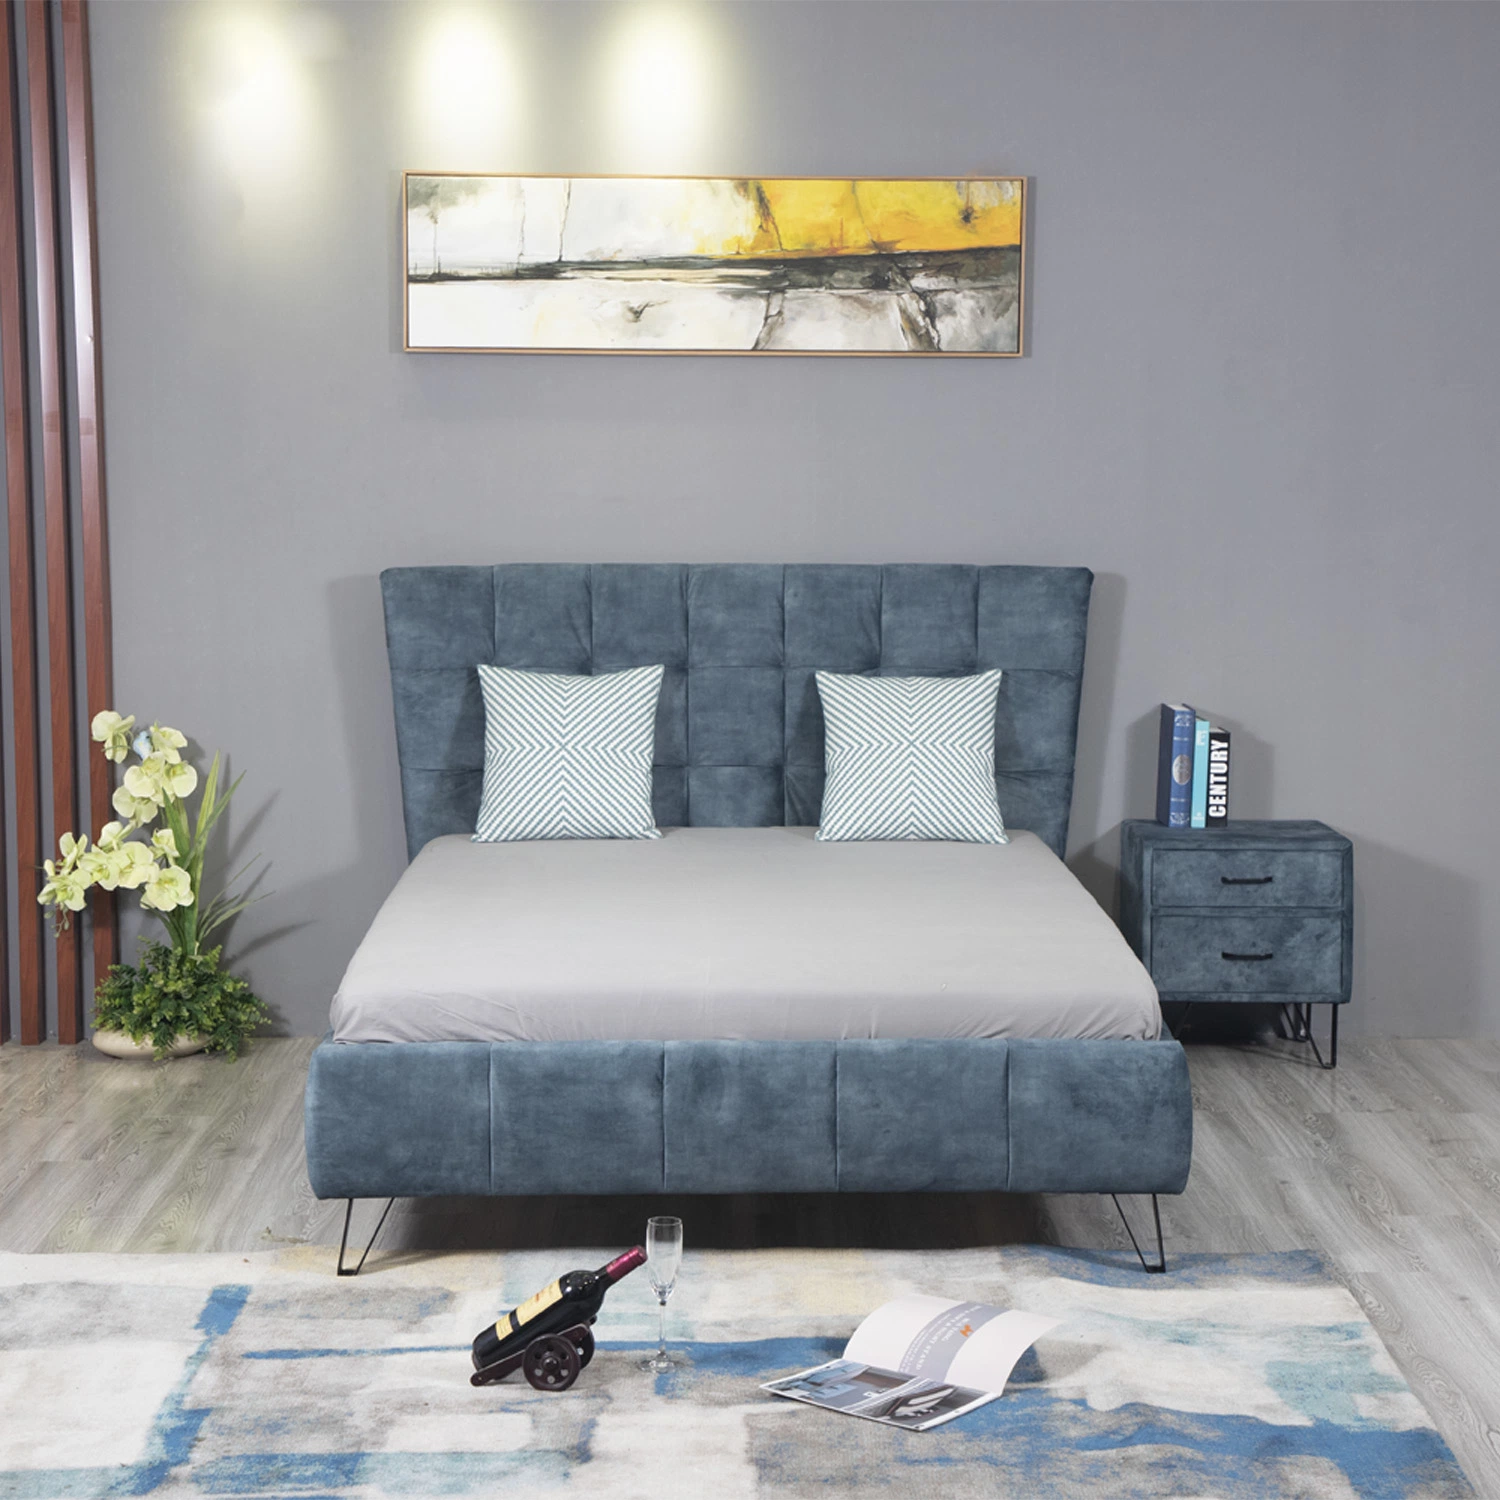 Huayang OEM personalizar dormitorio matrimonial Home Salón cama de lujo muebles modernos.